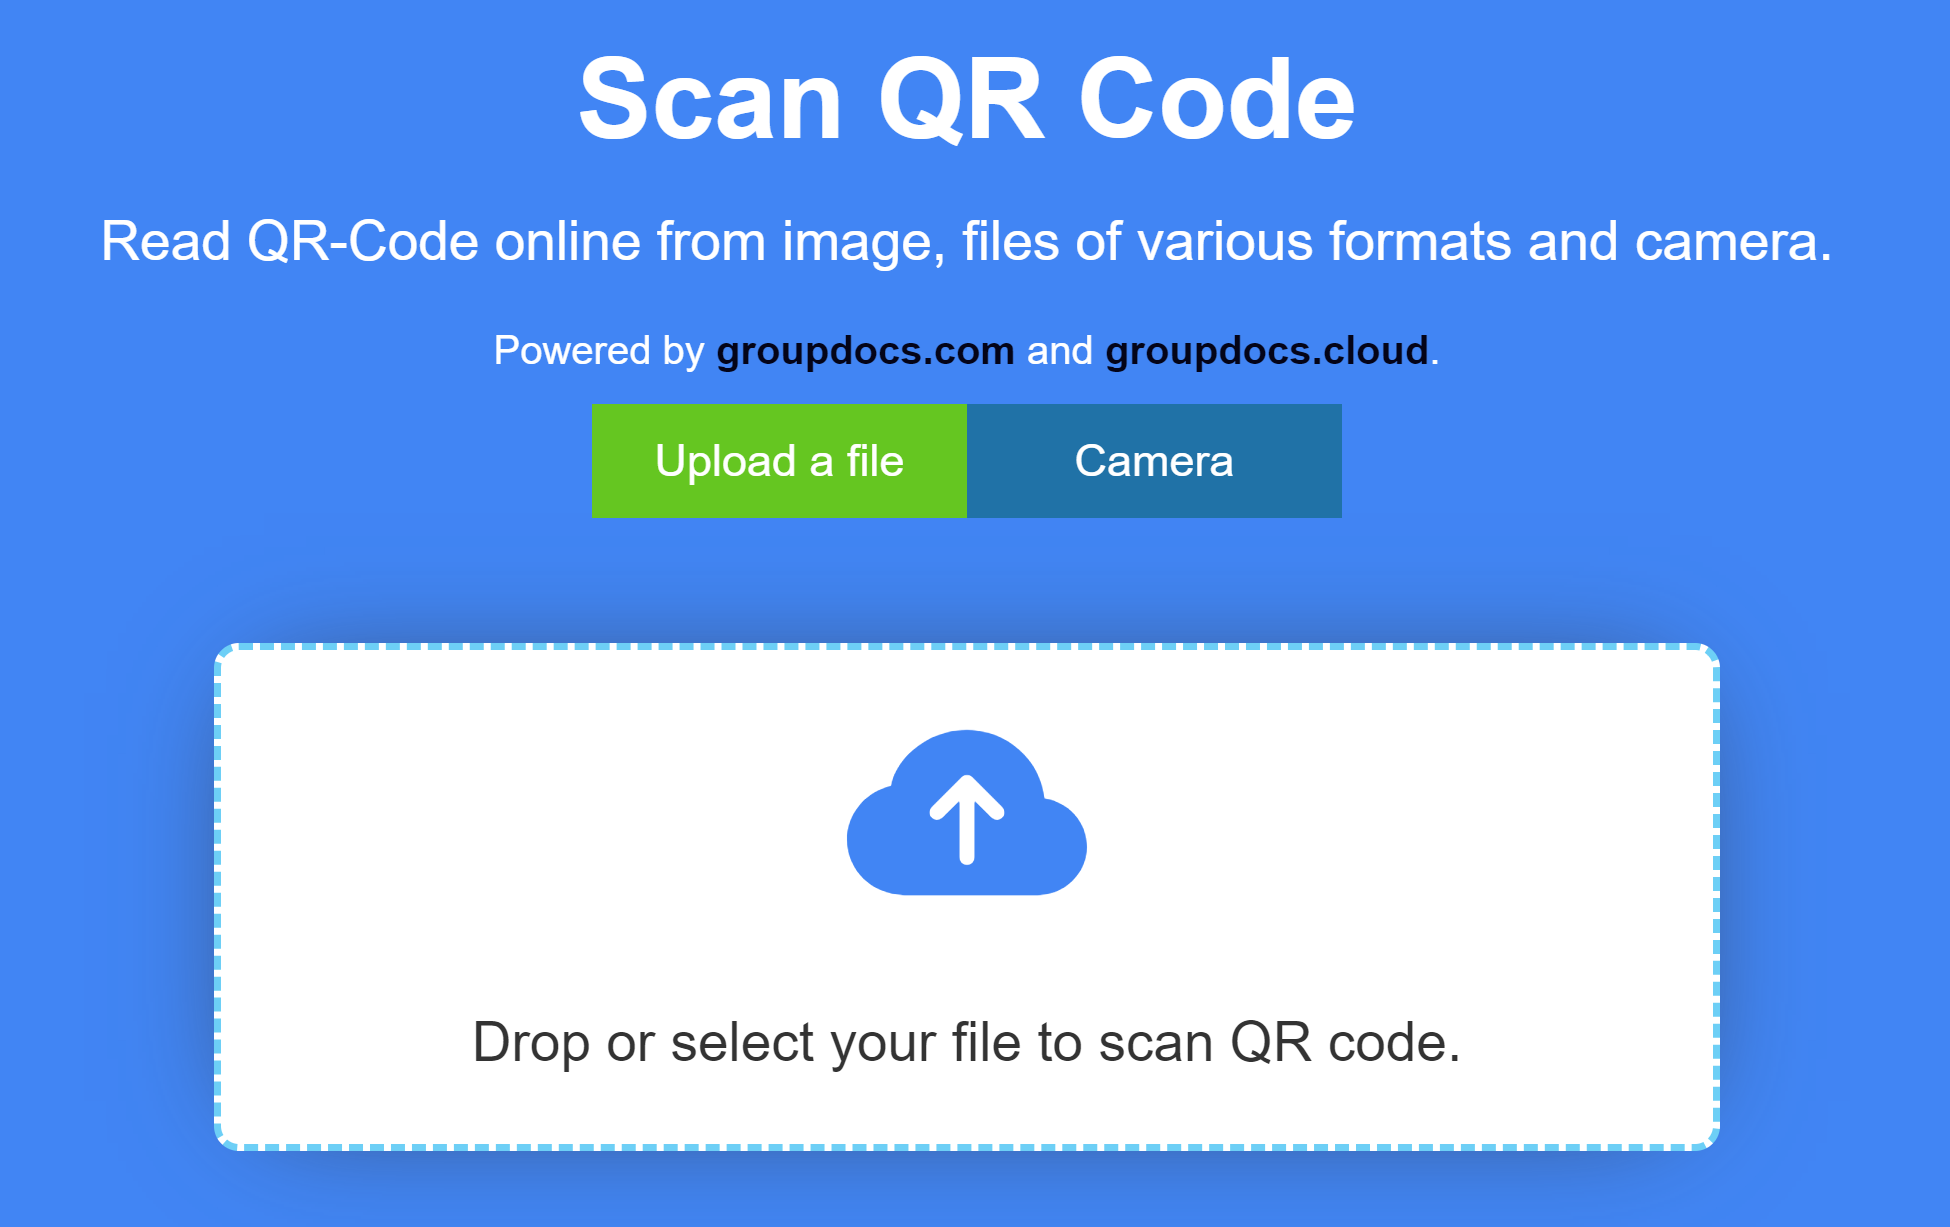 веб-сайт сканера qr-коду